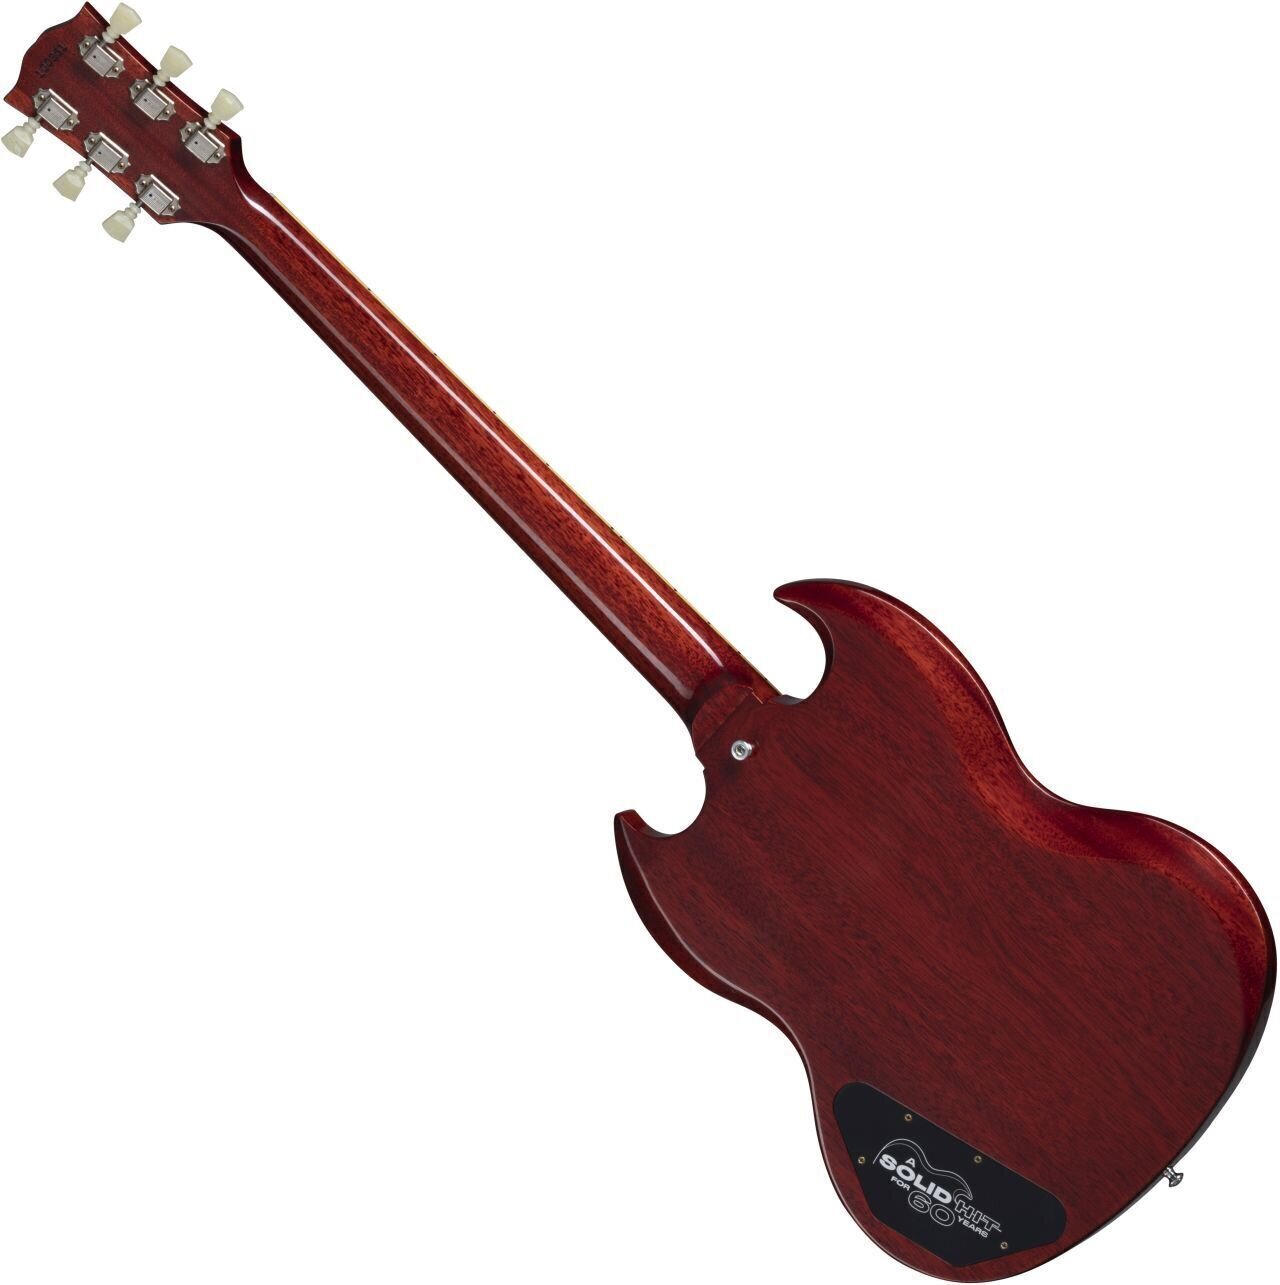 Gibson Sg Les Paul 1961 60th Ann. 2h Trem Rw - Vos Cherry Red - Guitarra eléctrica de doble corte. - Variation 1